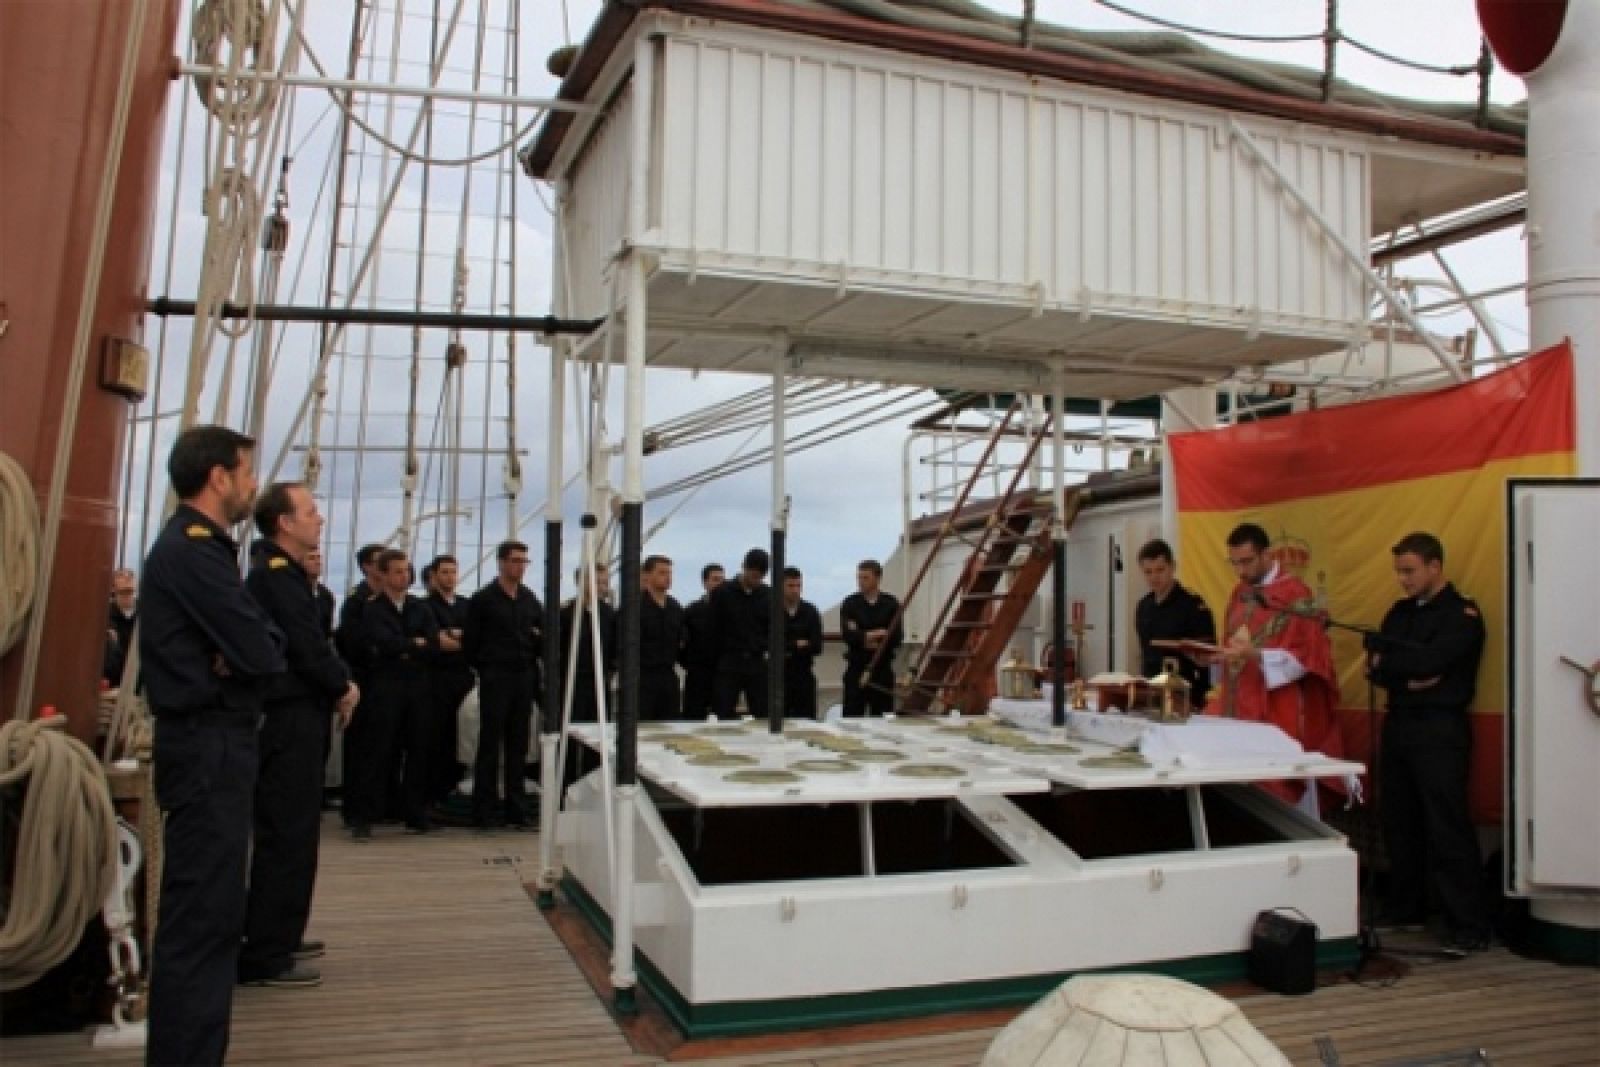 Celebración a bordo del buque escuela Juan Sebastián Elcano